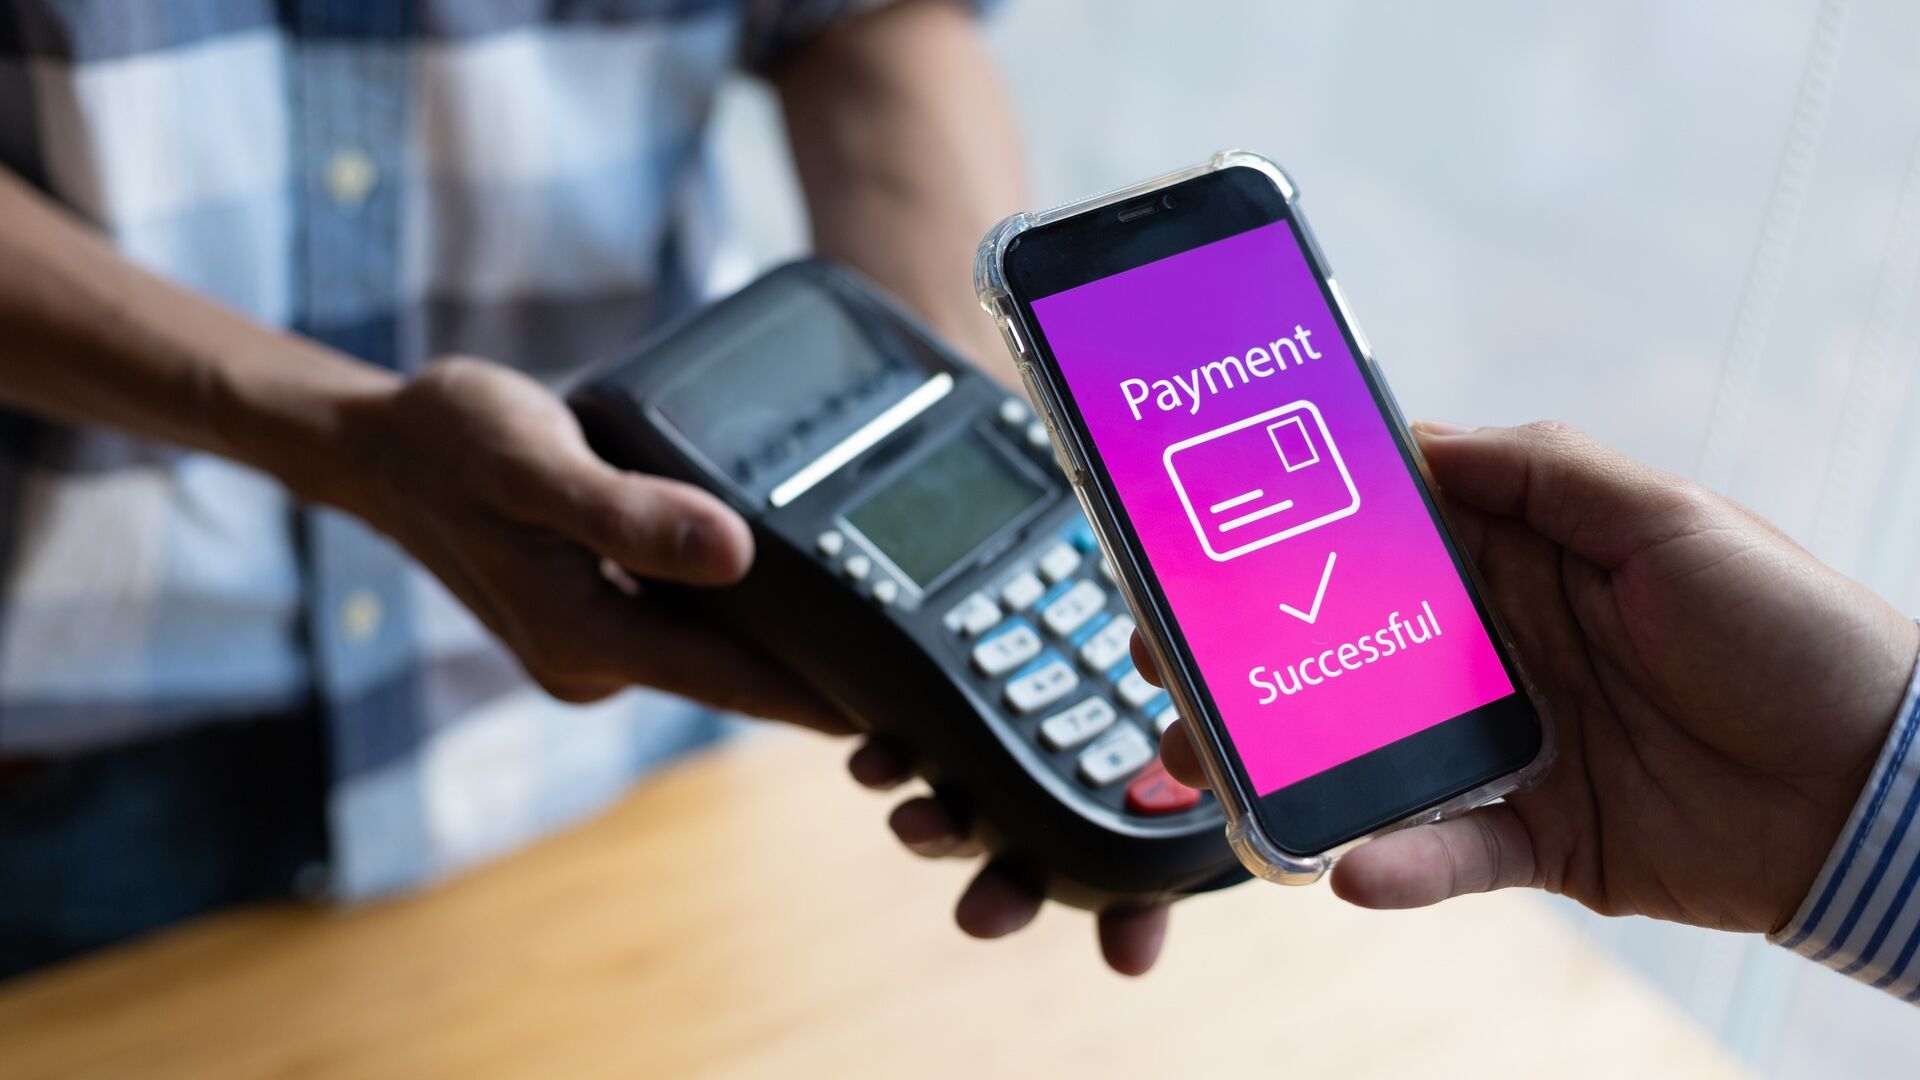 Mobilno plaćanje: prednosti mobilnog plaćanja moraju se učinkovito komunicirati, a sigurnosni problemi eliminirati, kako bi se steklo povjerenje potrošača